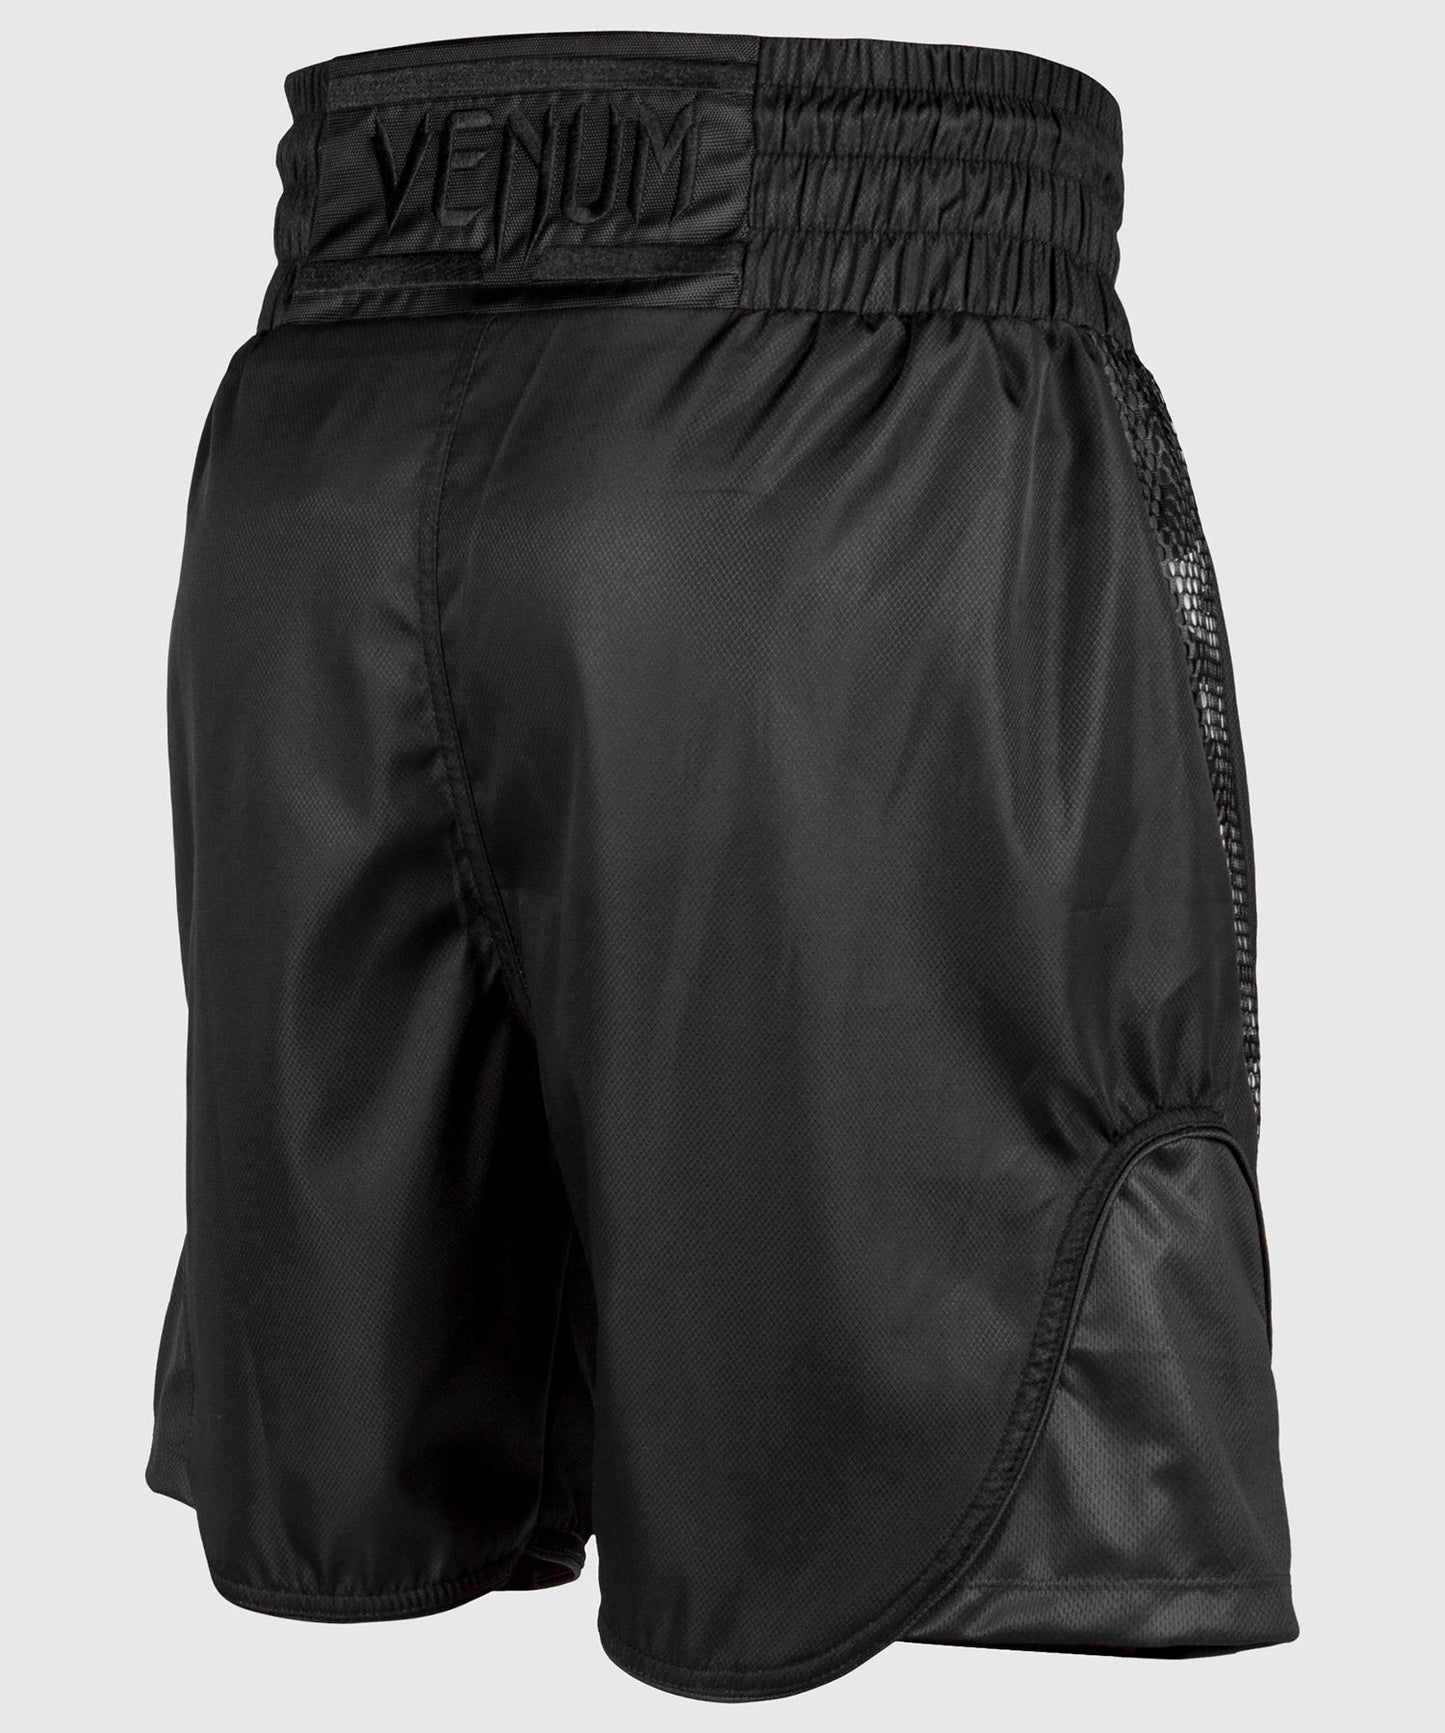 Venum Elite Boxing Shorts - Black/Black